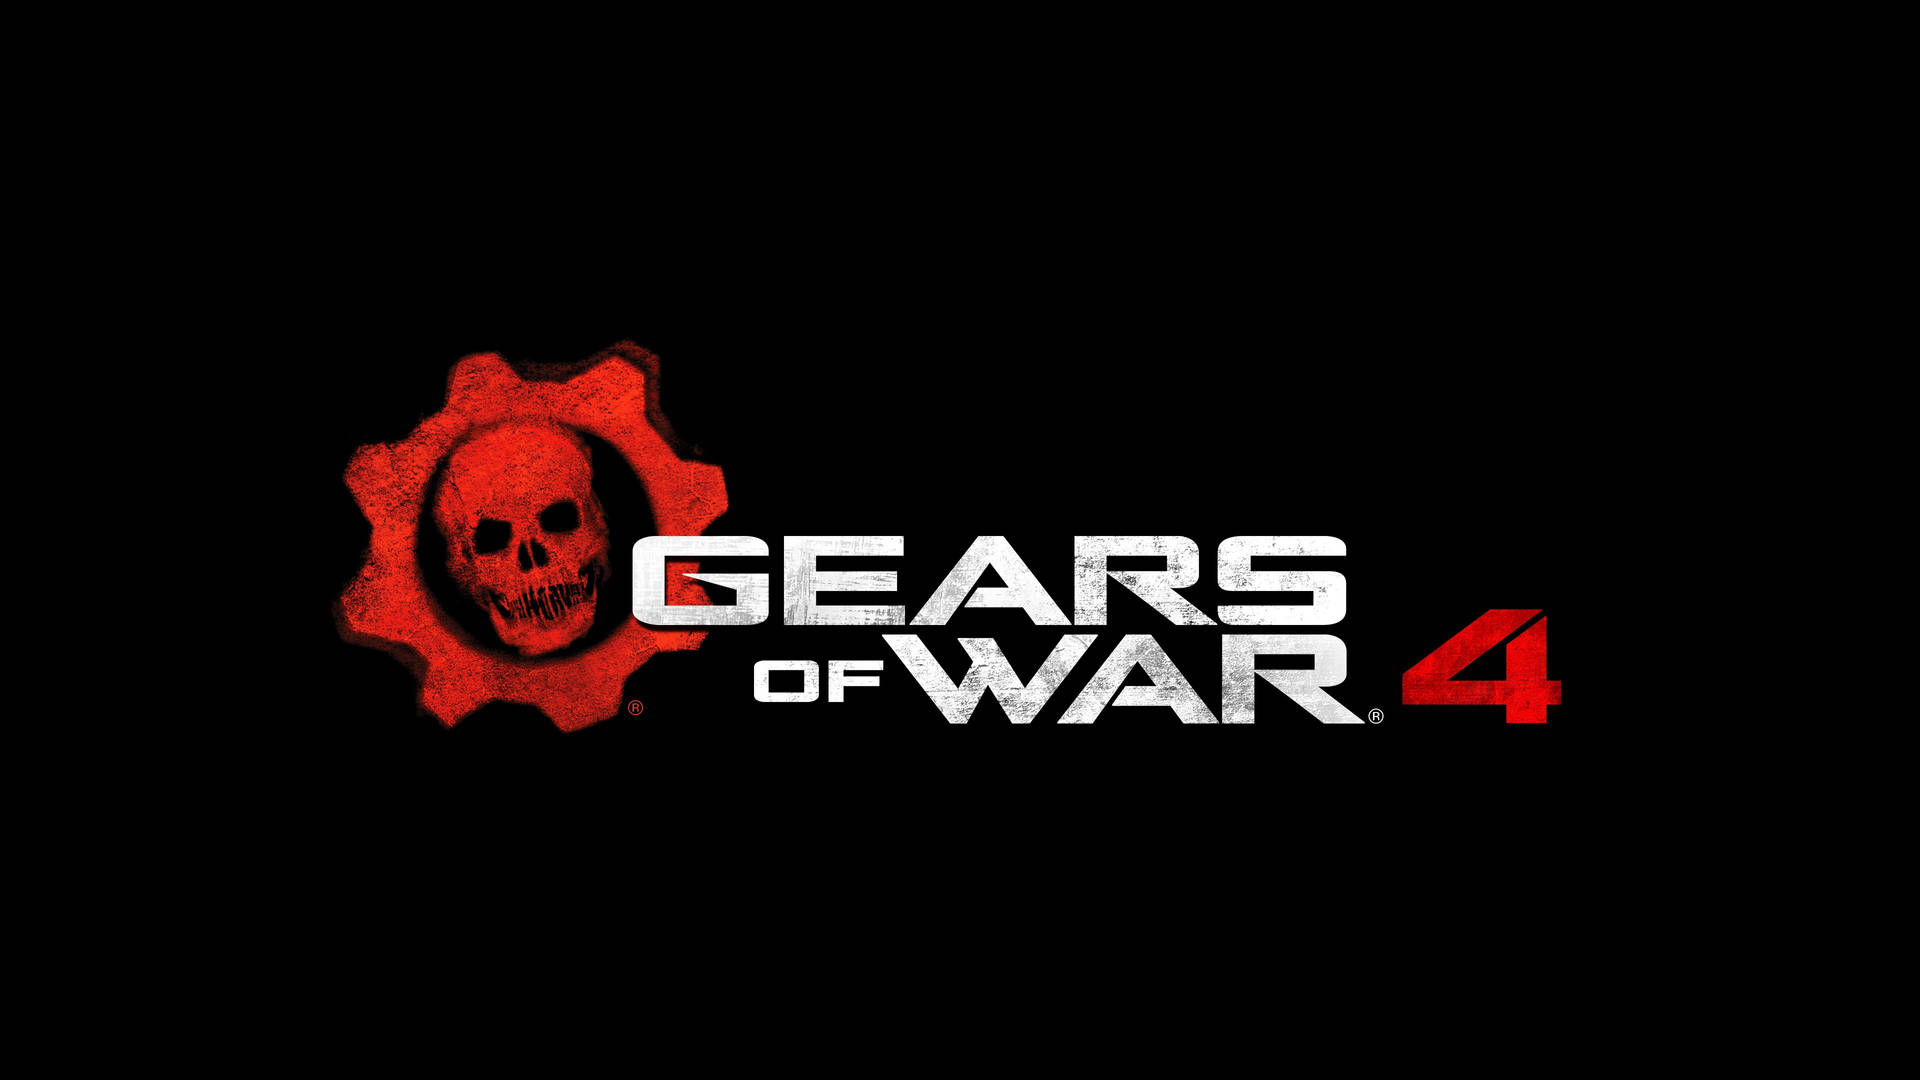 Gears Of War 4 Officielt Plakat Tapet: Se efter på det vilde kampsceneri, der hersker i Gears of War 4. Wallpaper